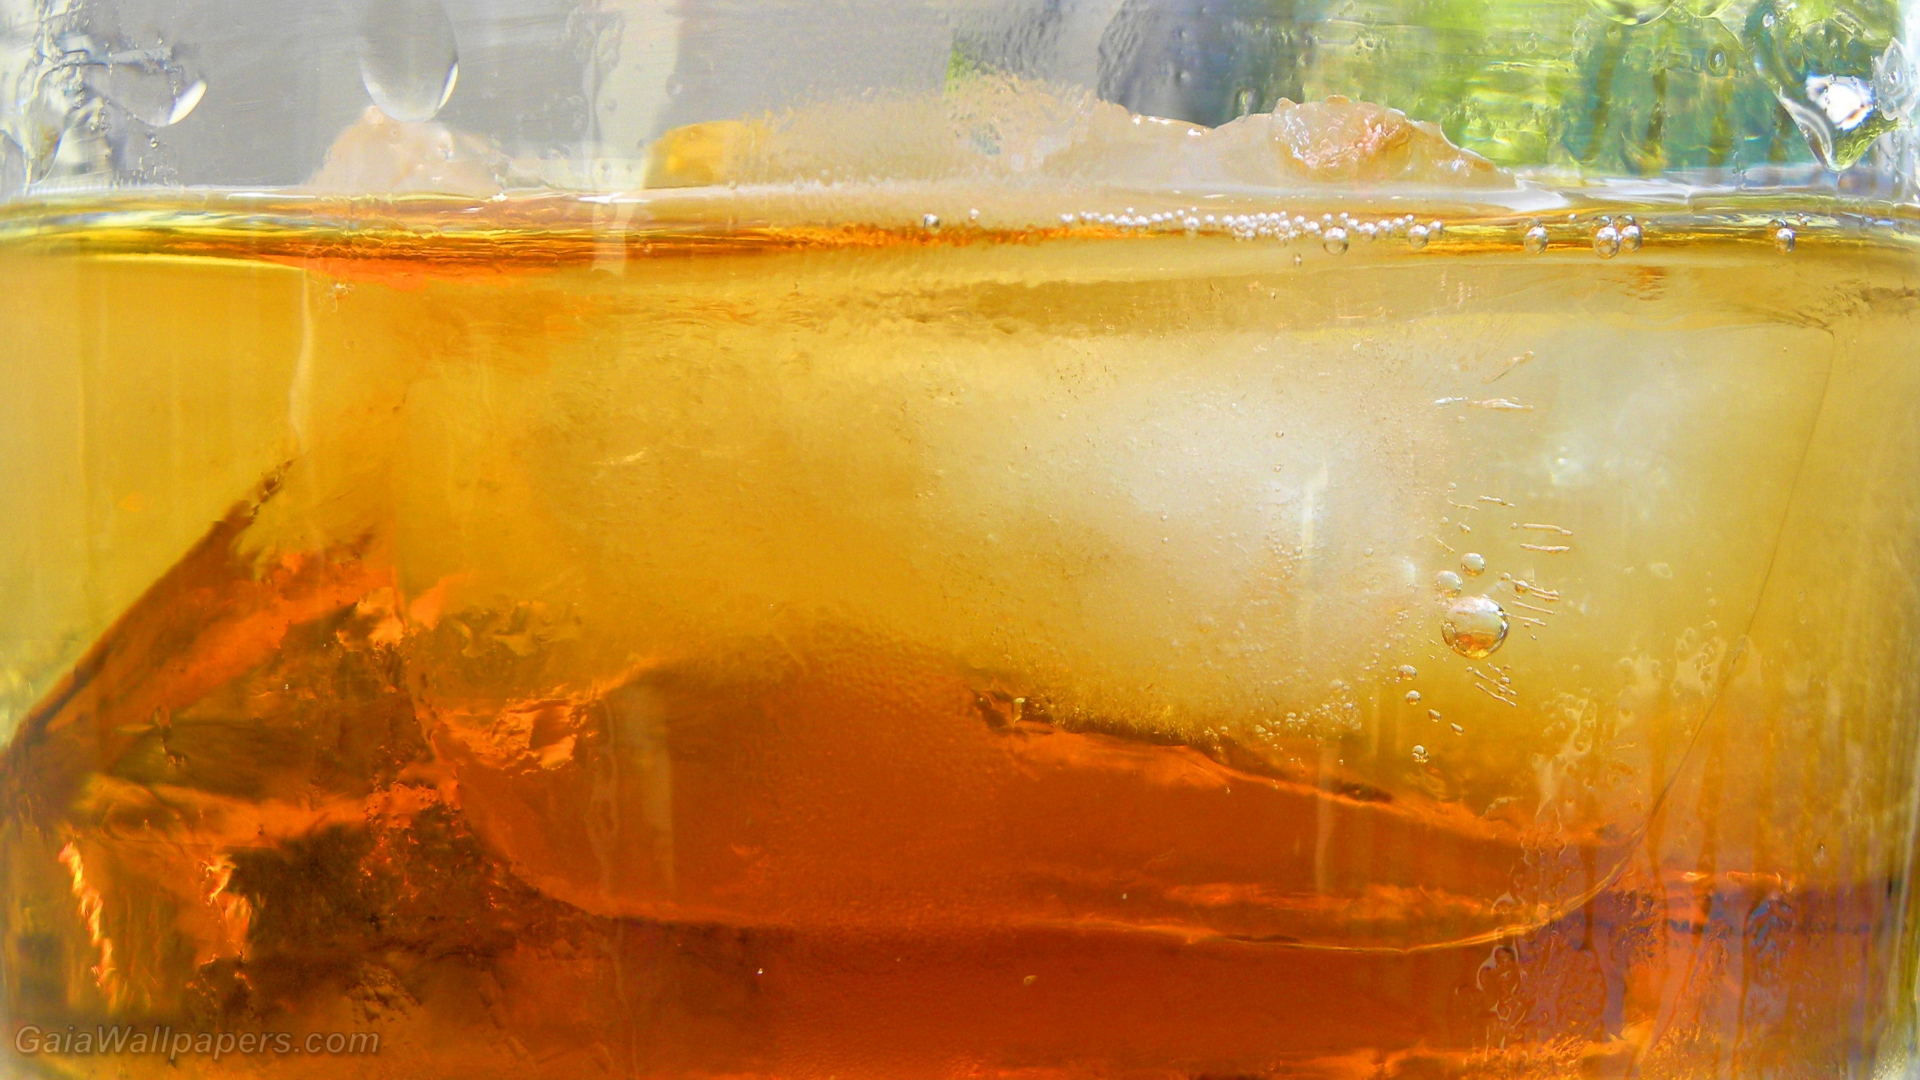 Refreshing amber drink - Free desktop wallpapers